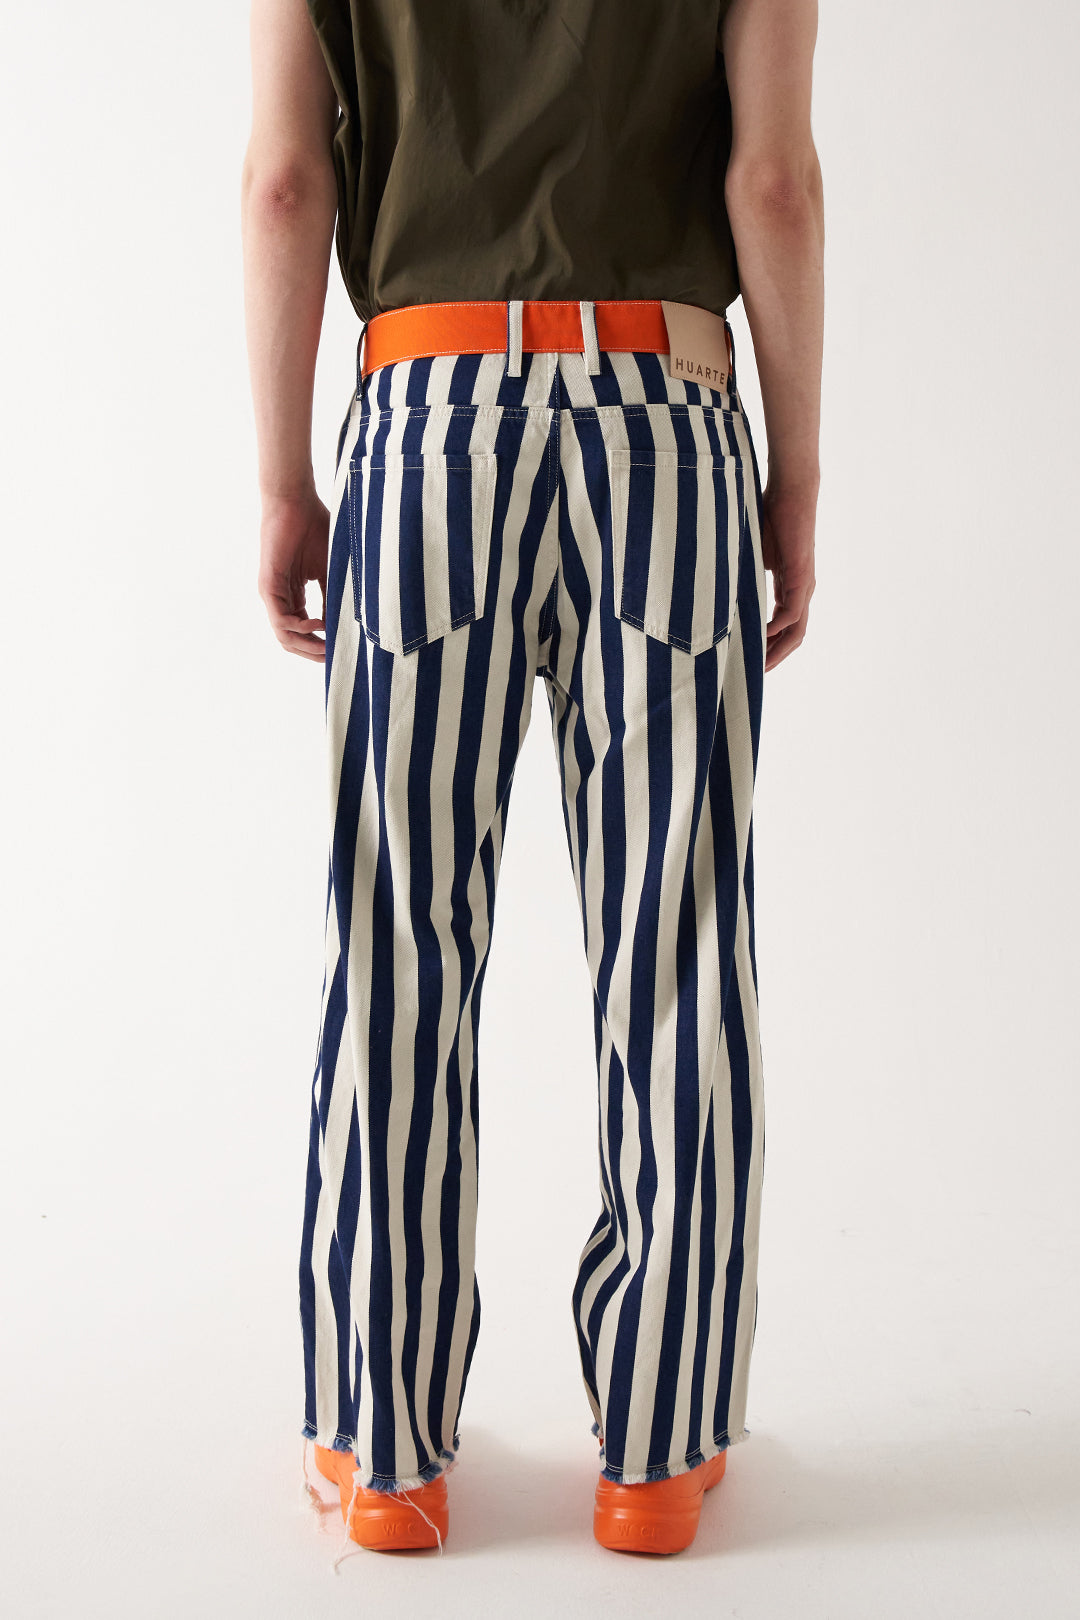 Mykonos striped jeans